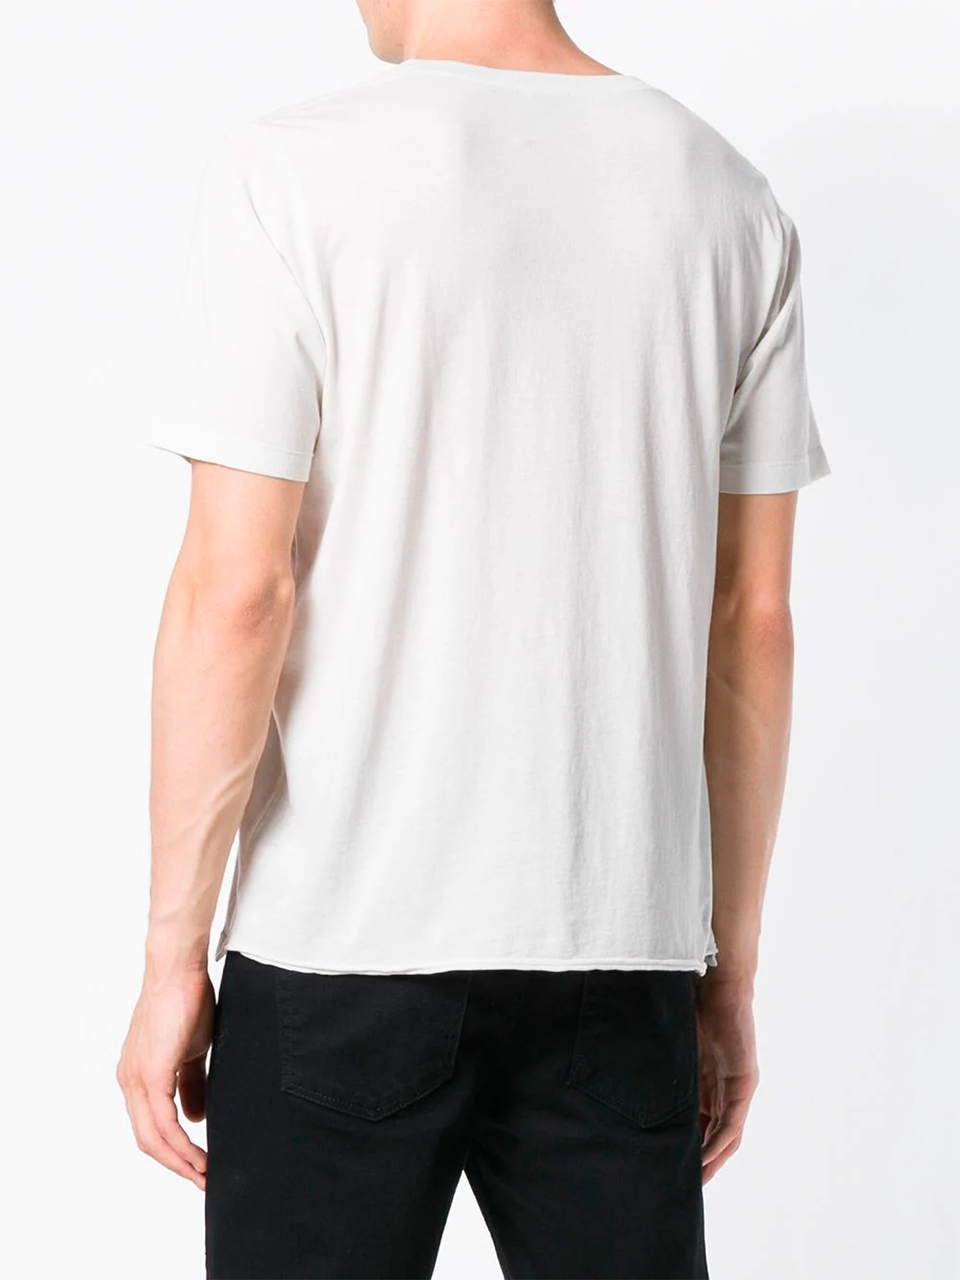 Imagem de: Camiseta Saint Laurent Branca com Estampa